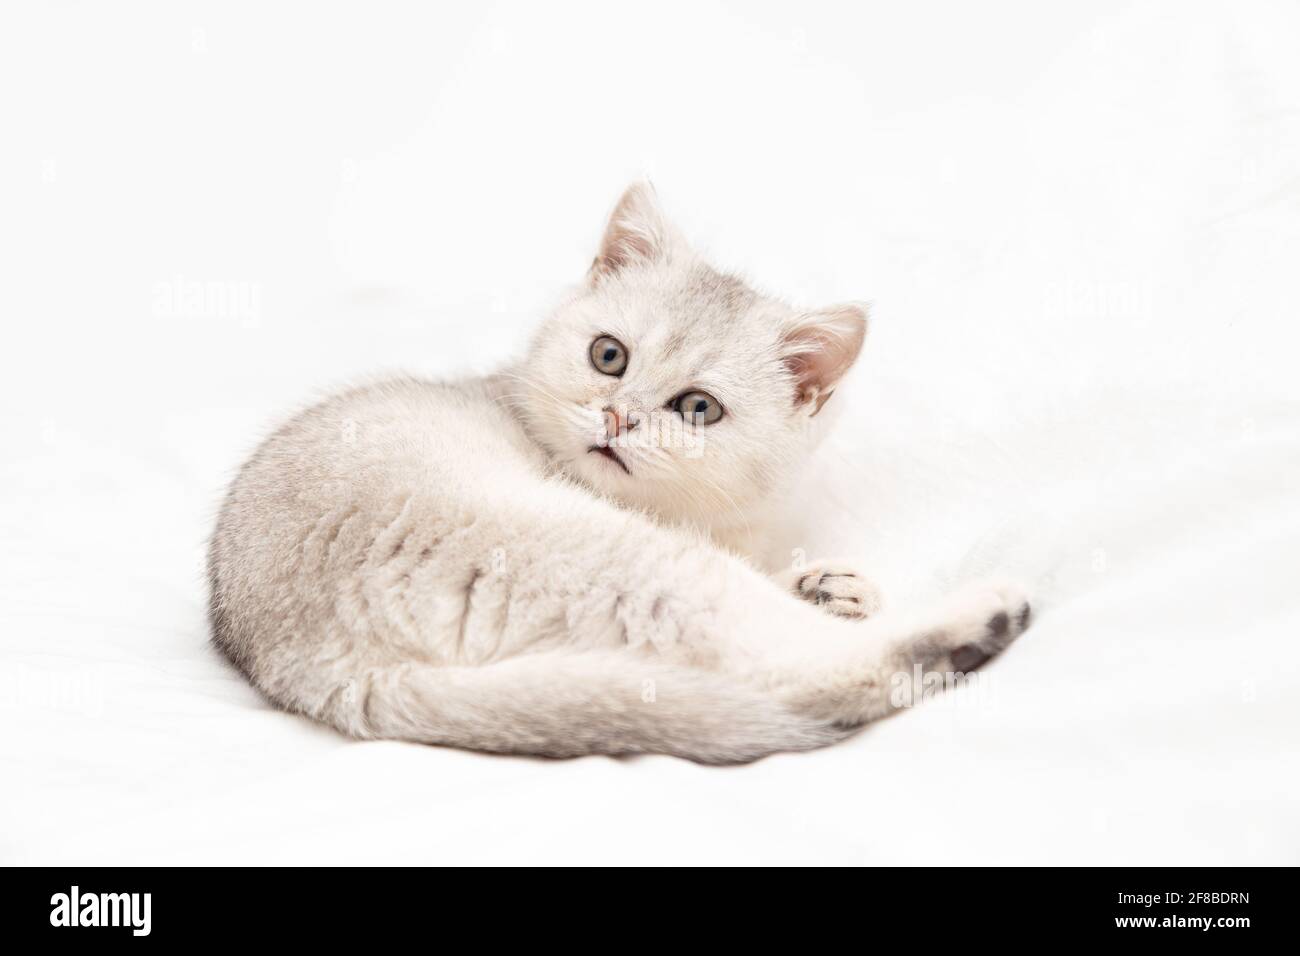 Kleines weißes britisches Kätzchen auf einer weißen Decke. Witziges, neugieriges Haustier. Speicherplatz kopieren. Stockfoto